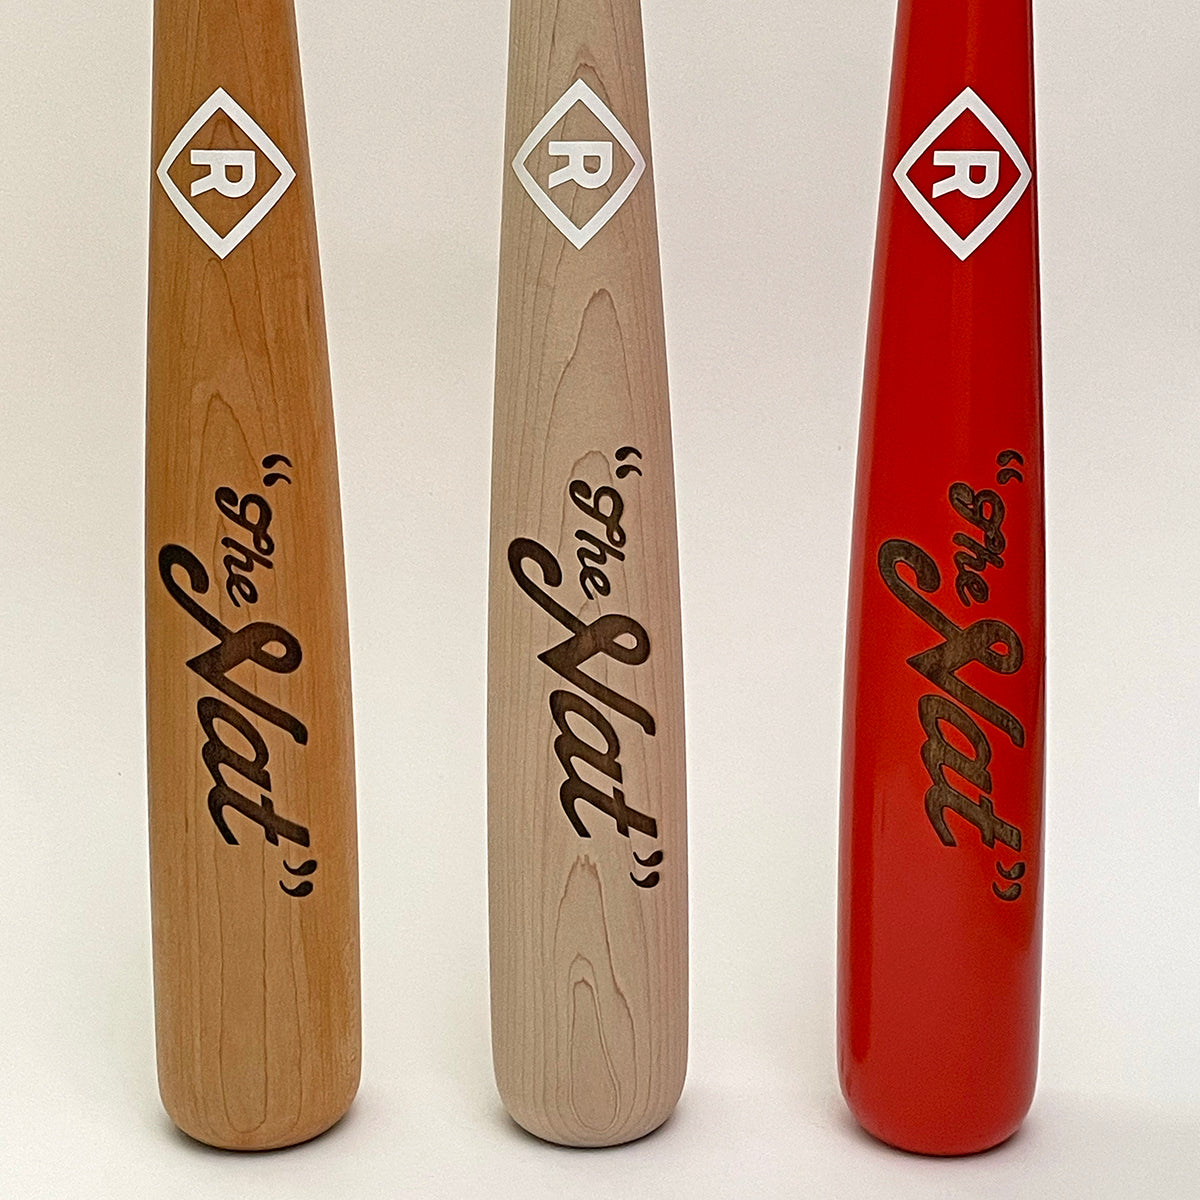 'The Nat' limited edition baseball bat